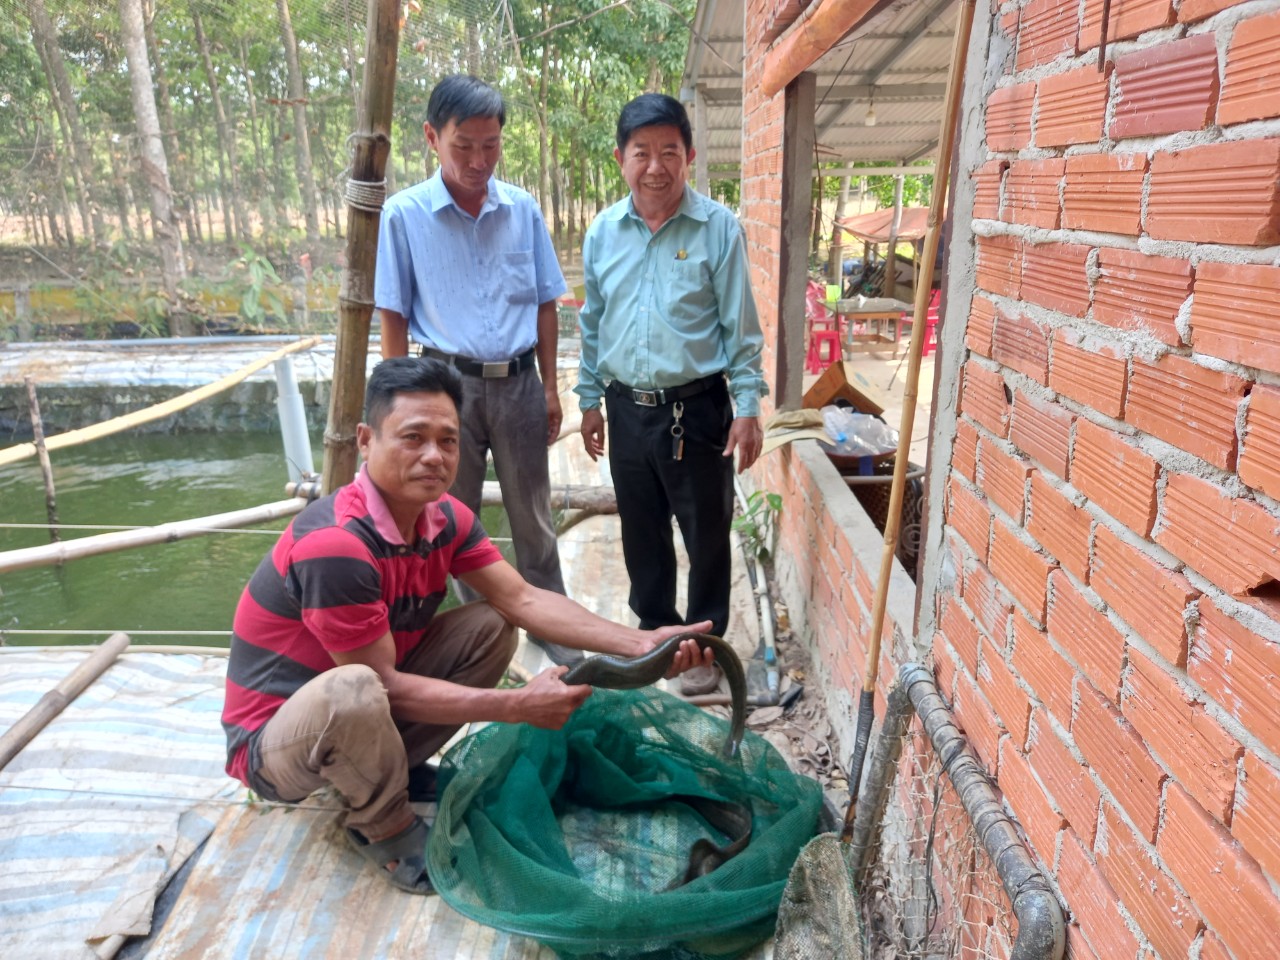 Nuôi thứ cá dài ở Tây Ninh, ăn bổ dưỡng, khỏe người, ví như nhân sâm nước, nhiều người tới xem - Ảnh 2.